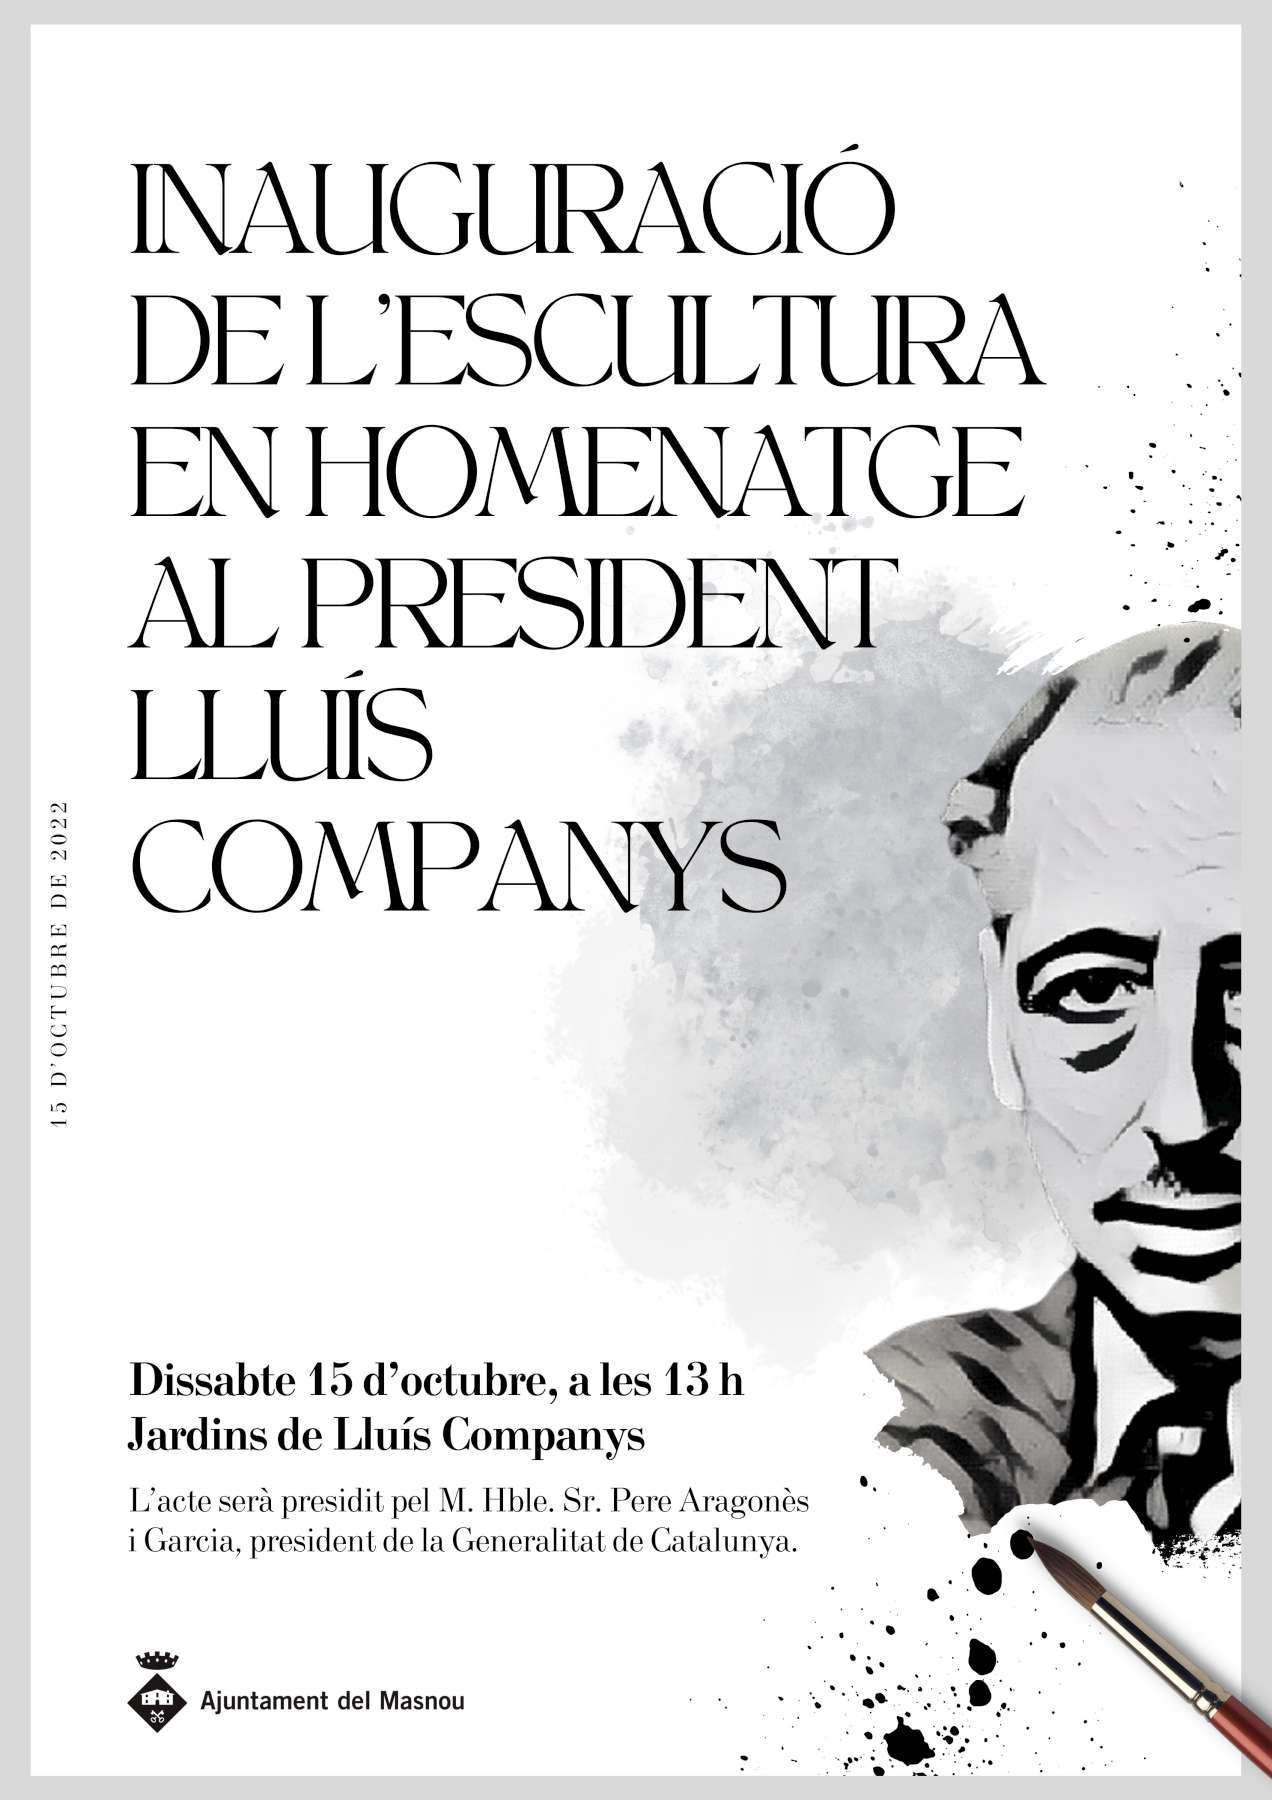 El president de la Generalitat visitarà el Masnou per inaugurar una escultura de Lluís Companys